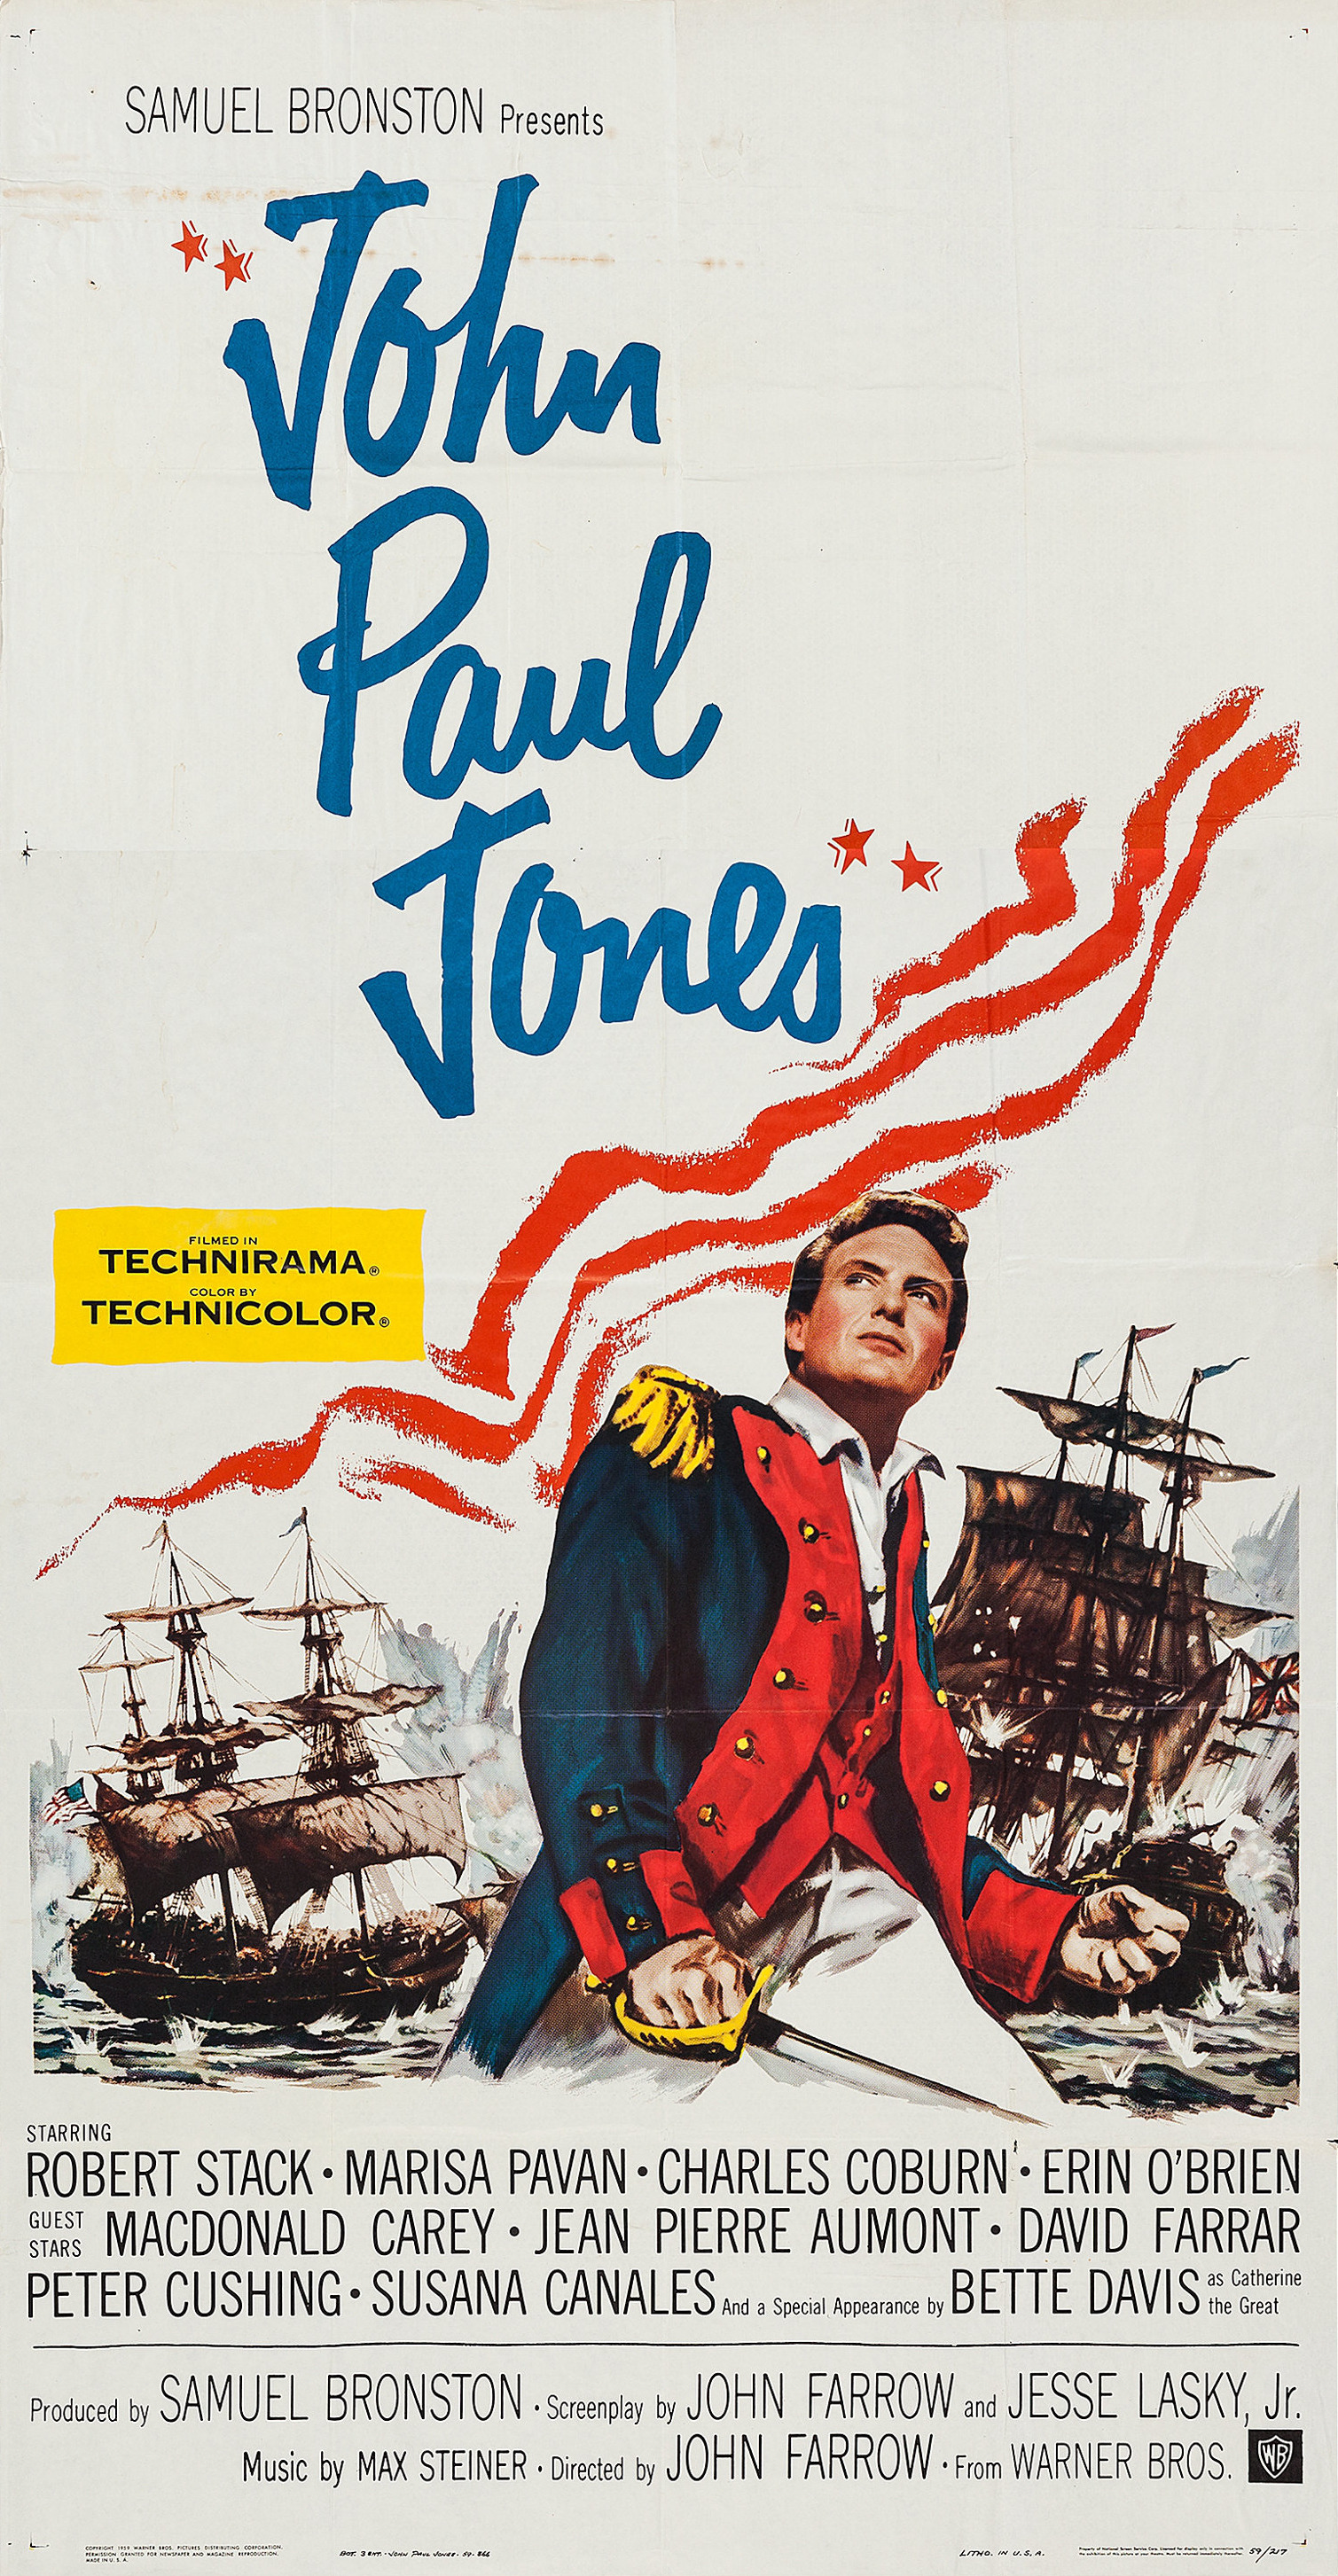 Mega Sized Movie Poster Image for John Paul Jones (#2 of 4)